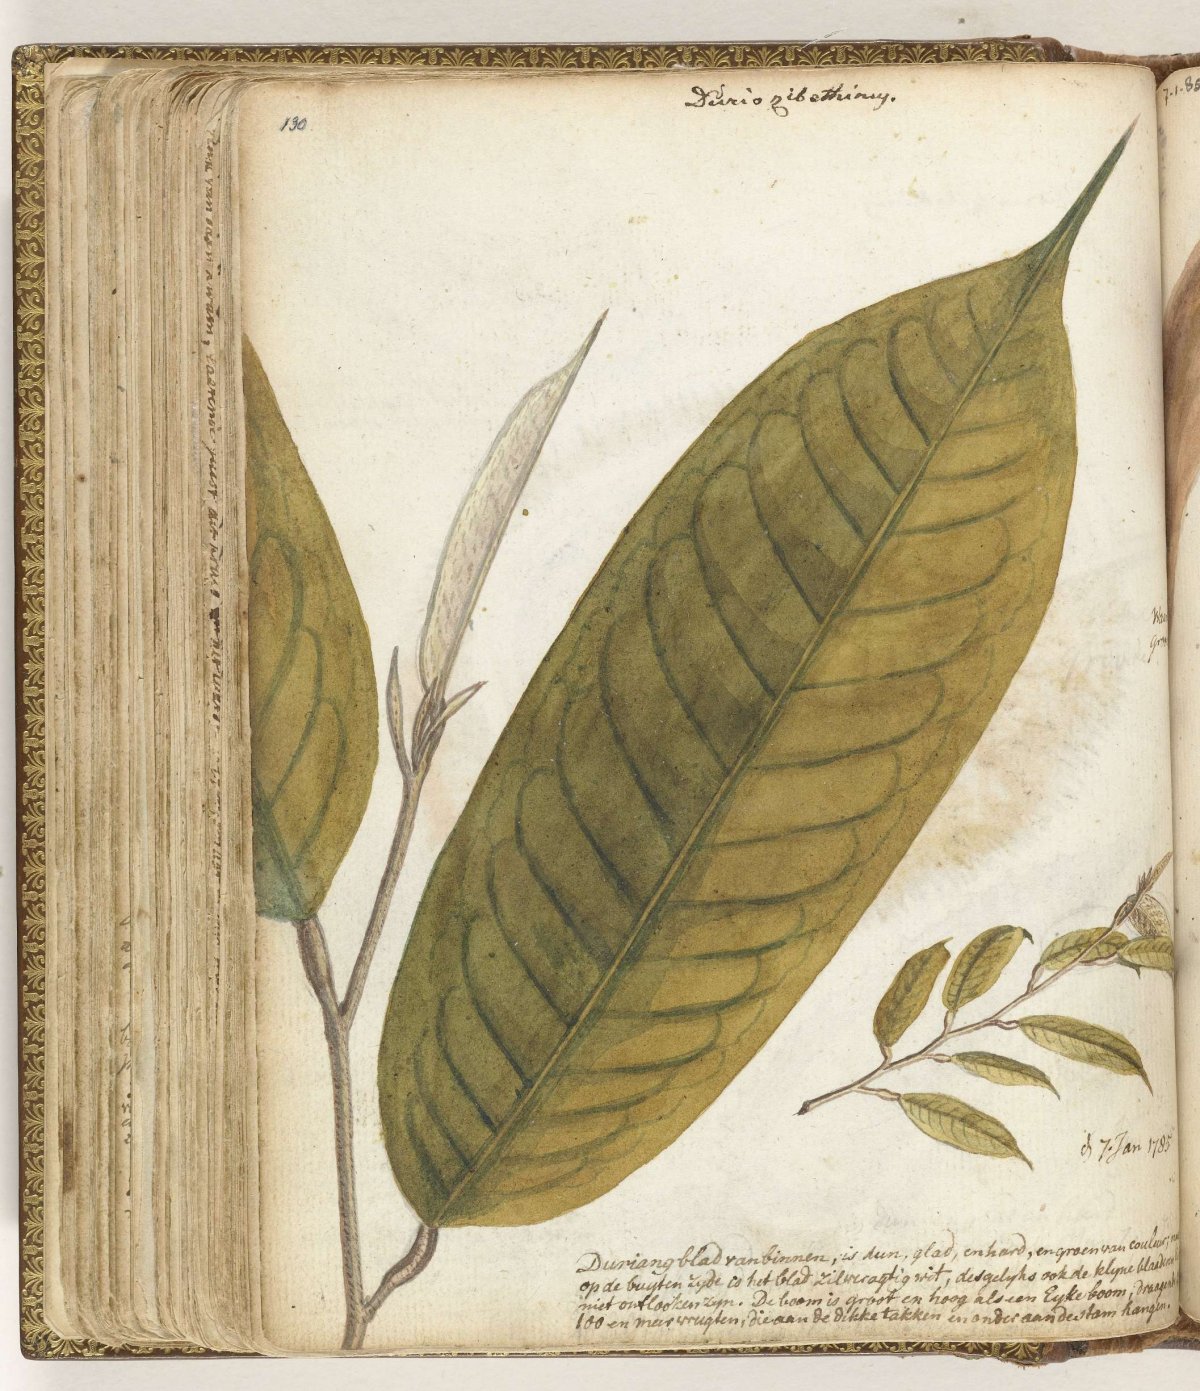 Durianblad, Jan Brandes, 1785